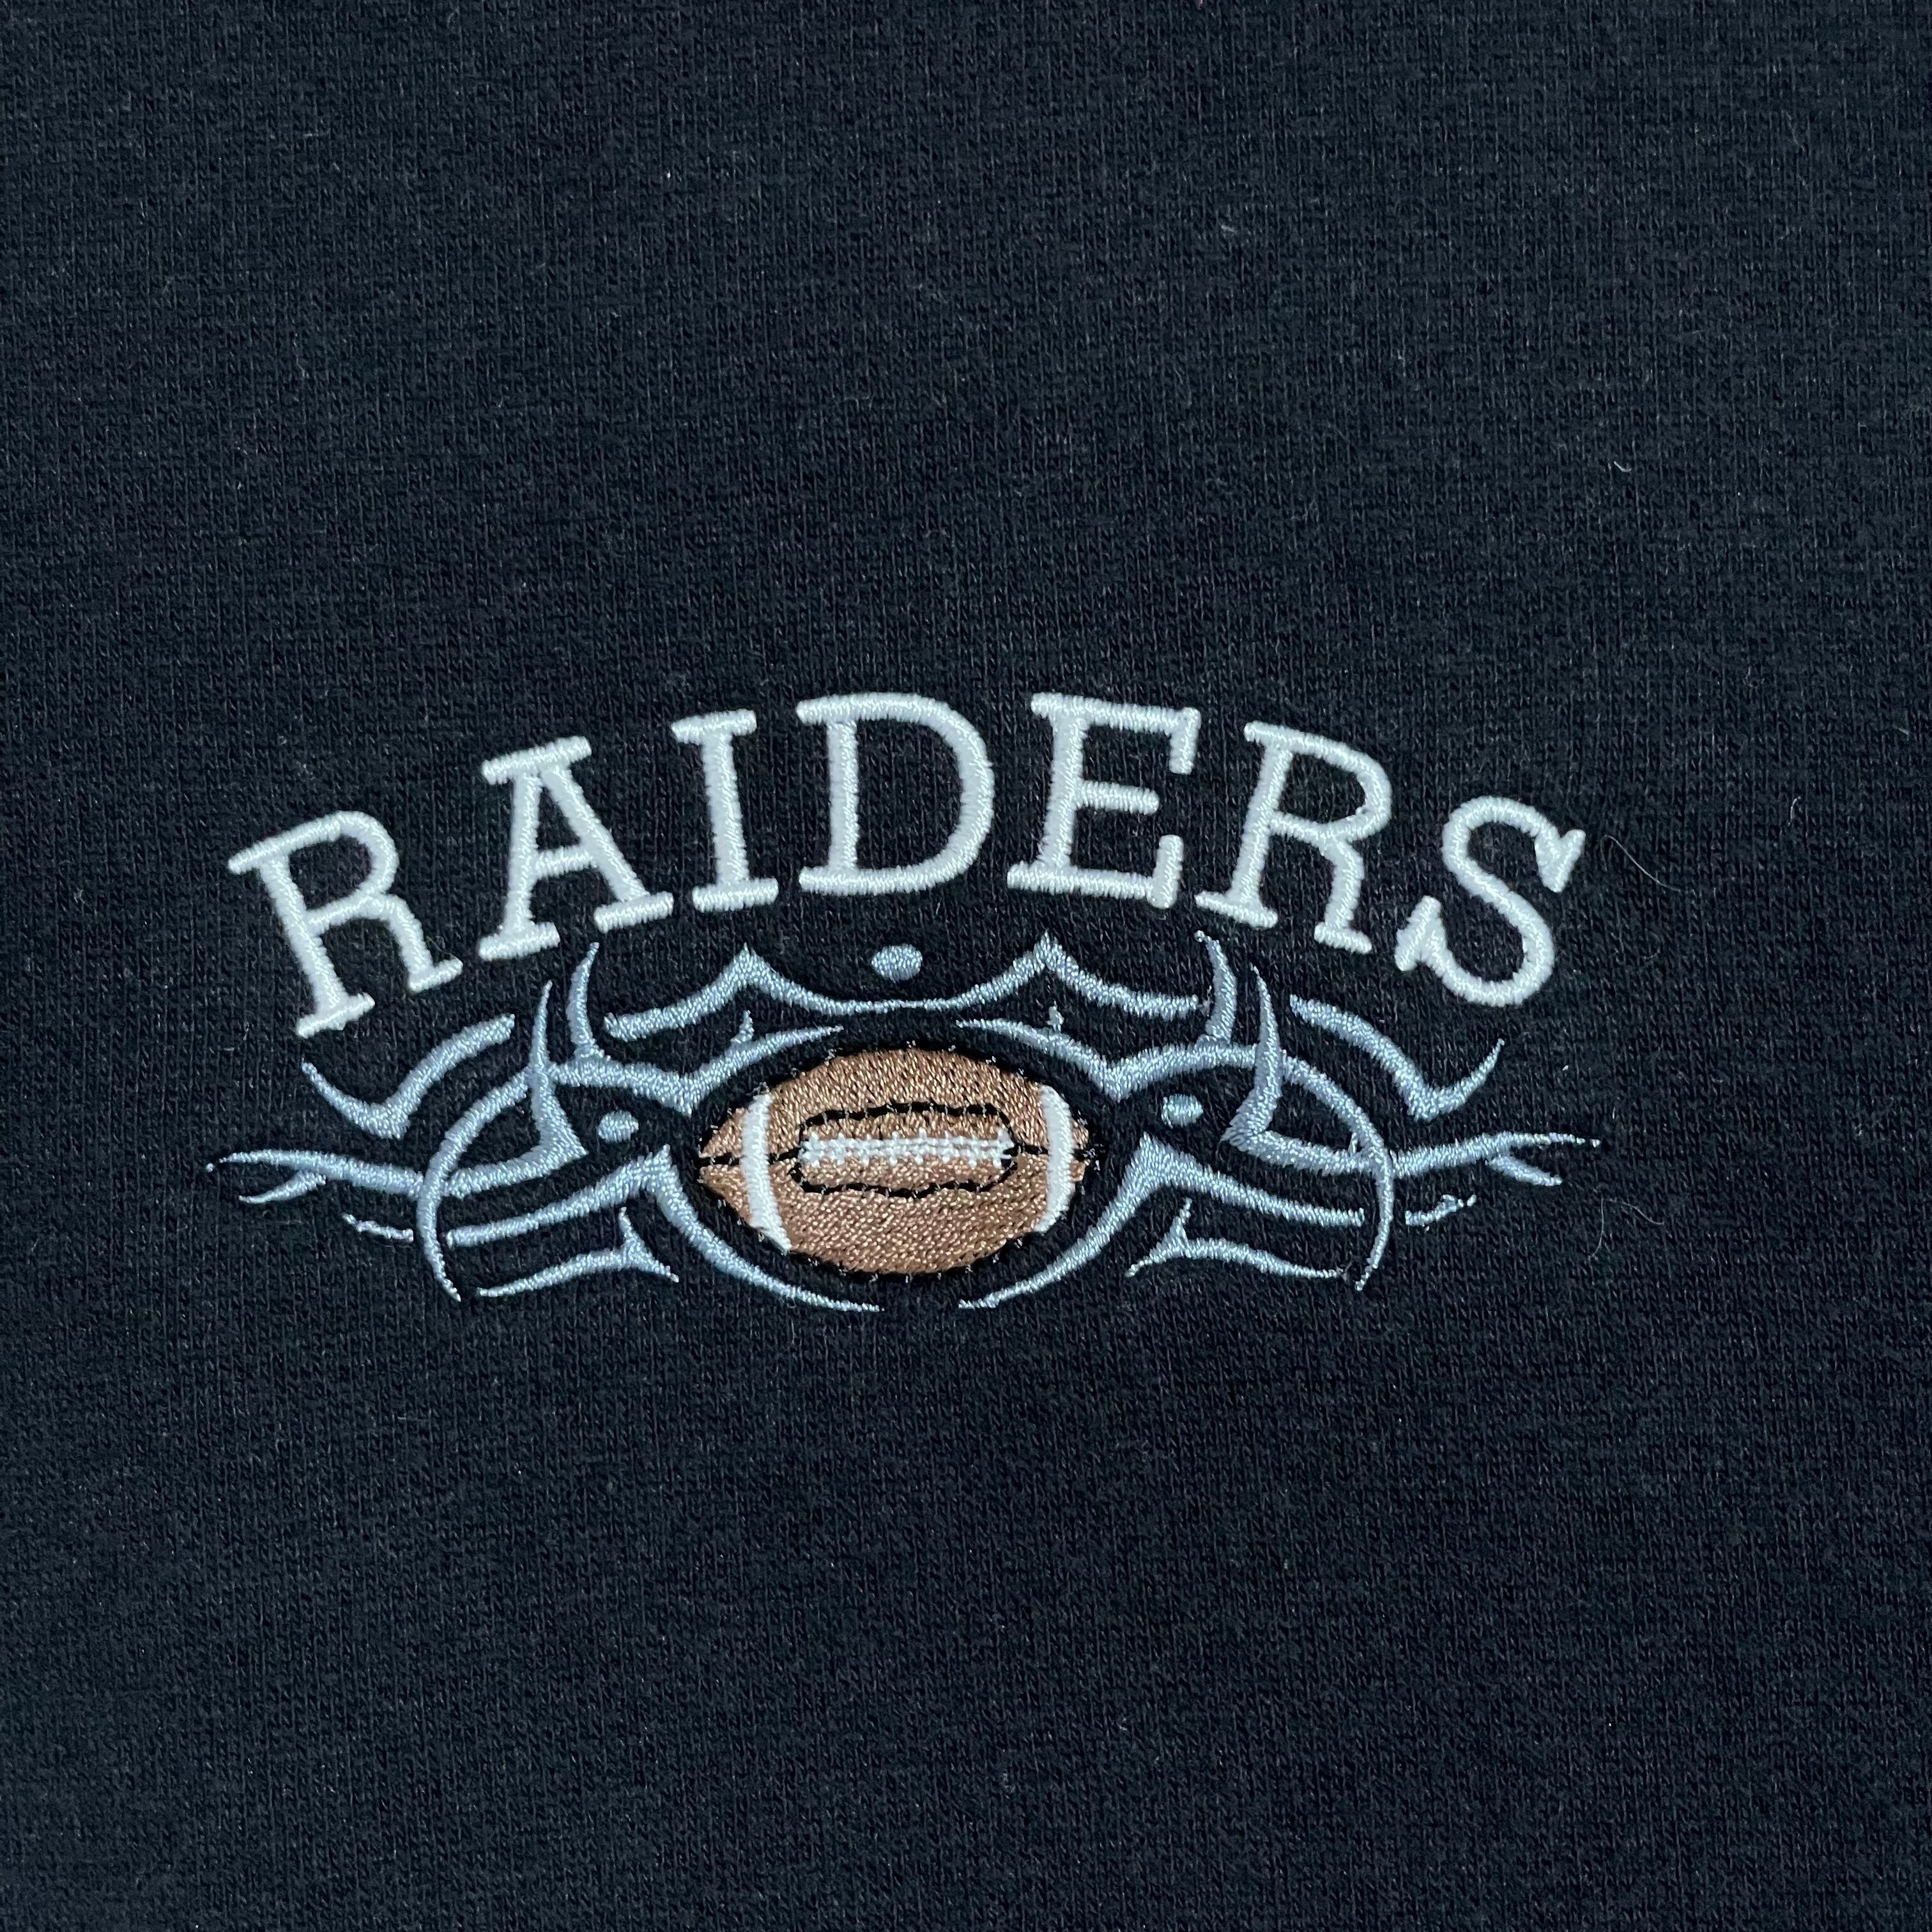 【NFL】RAIDERS レイダースブラックフリースジャケット アメフト